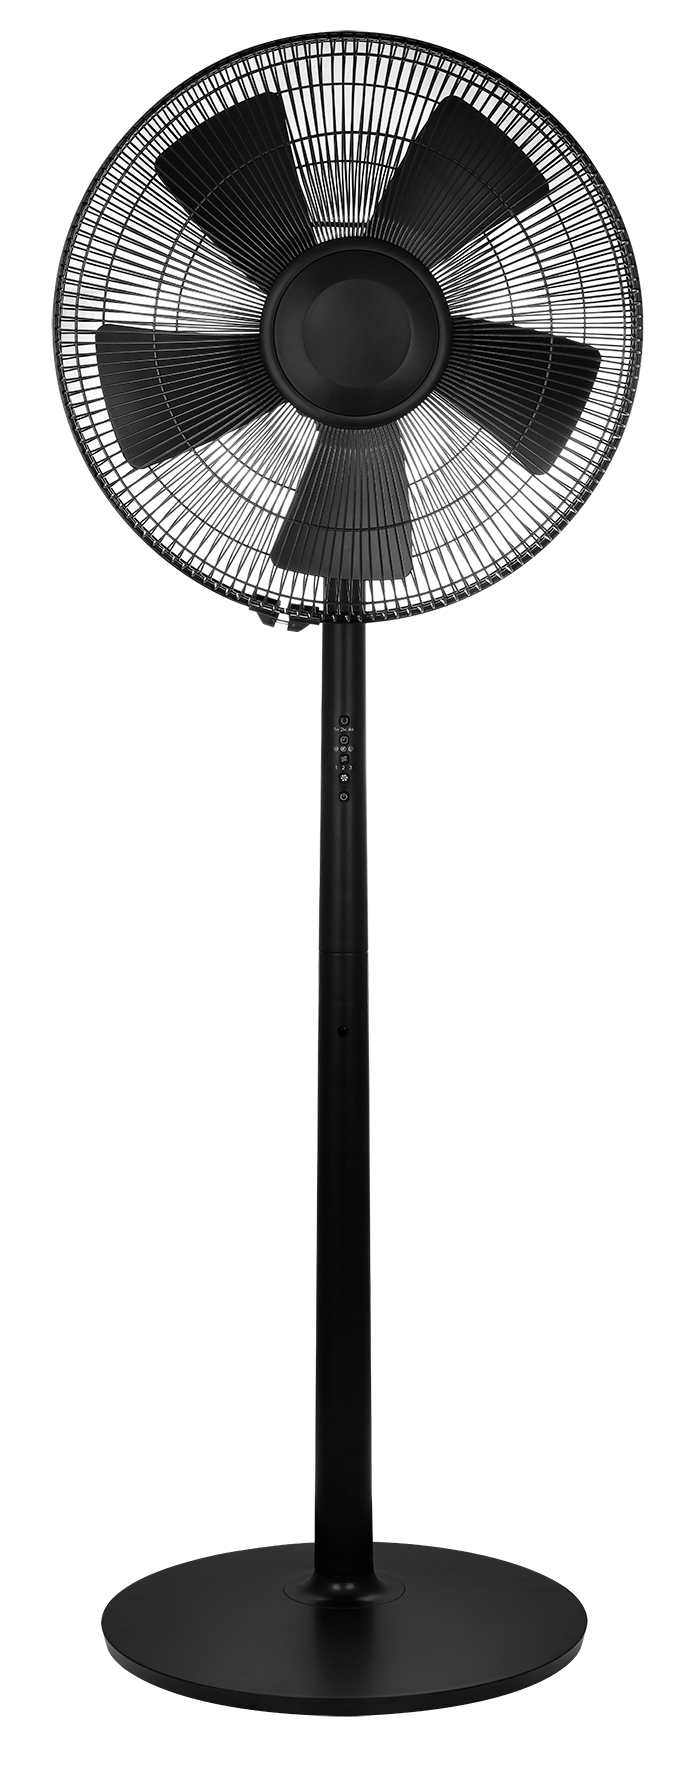 staande ventilator met afstandsbediening 135cm luxe zwart - HEMA